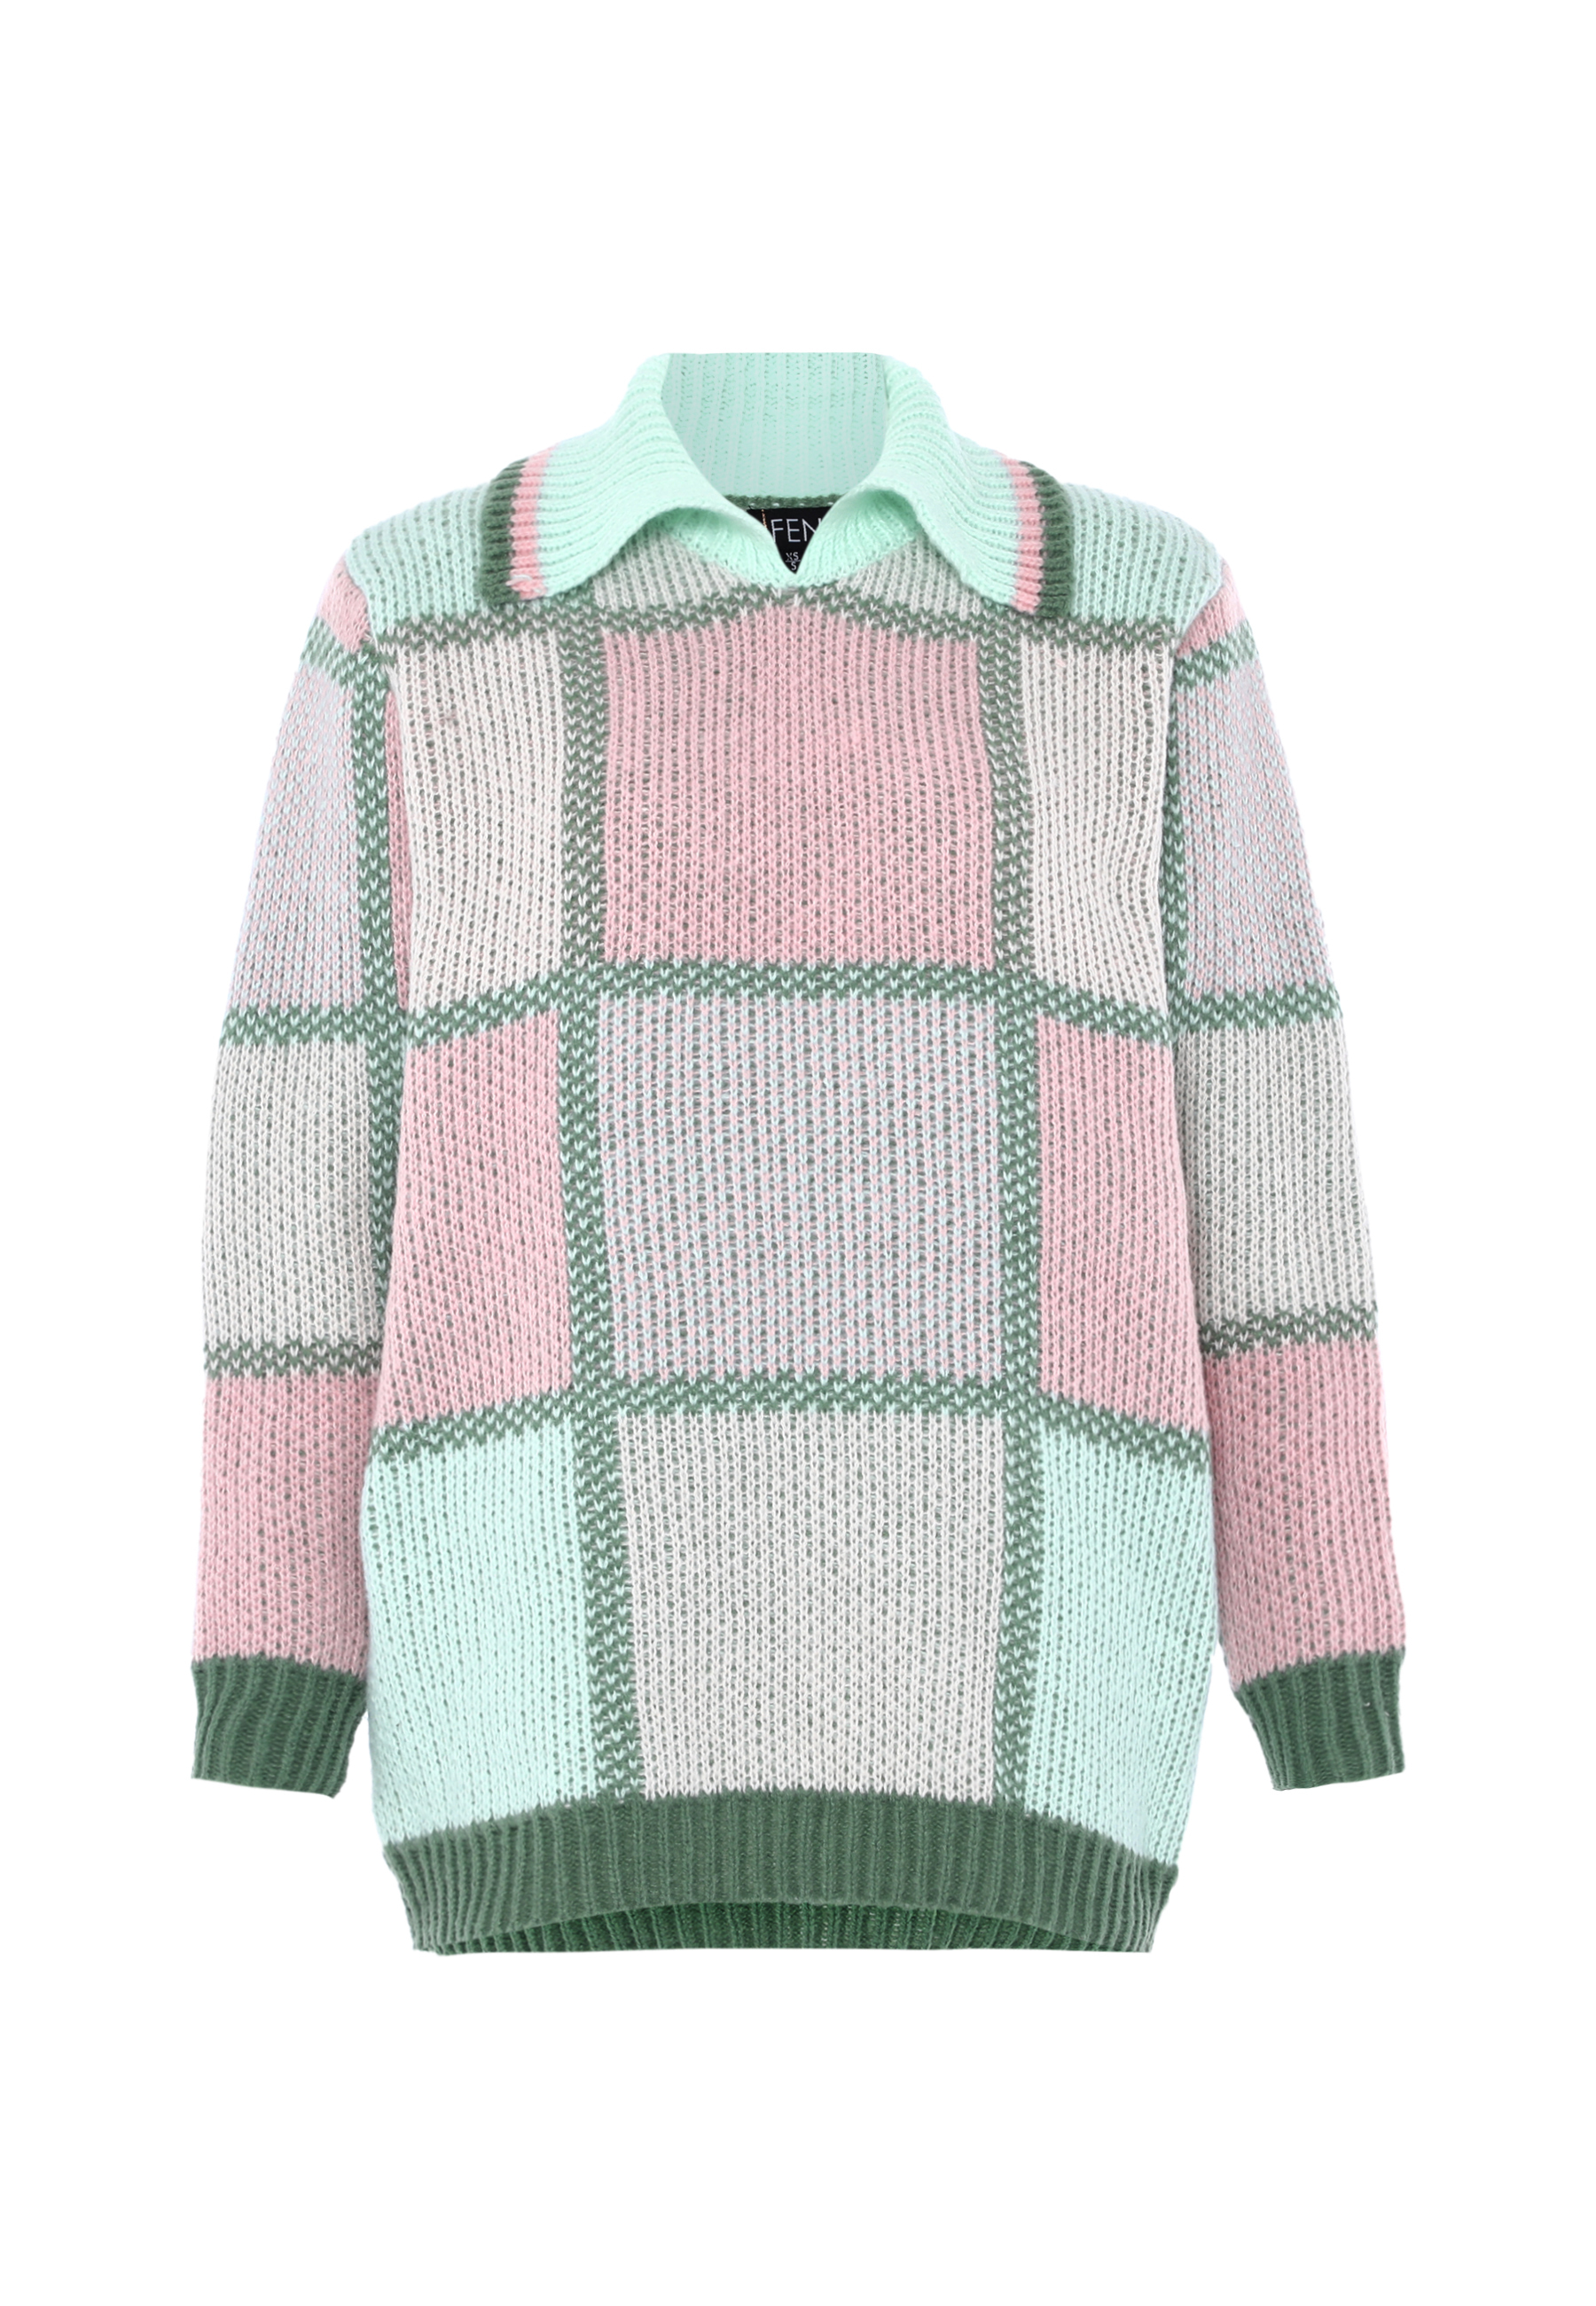 Свитер FENIA Sweater, разноцветный свитер fenia sweater белый